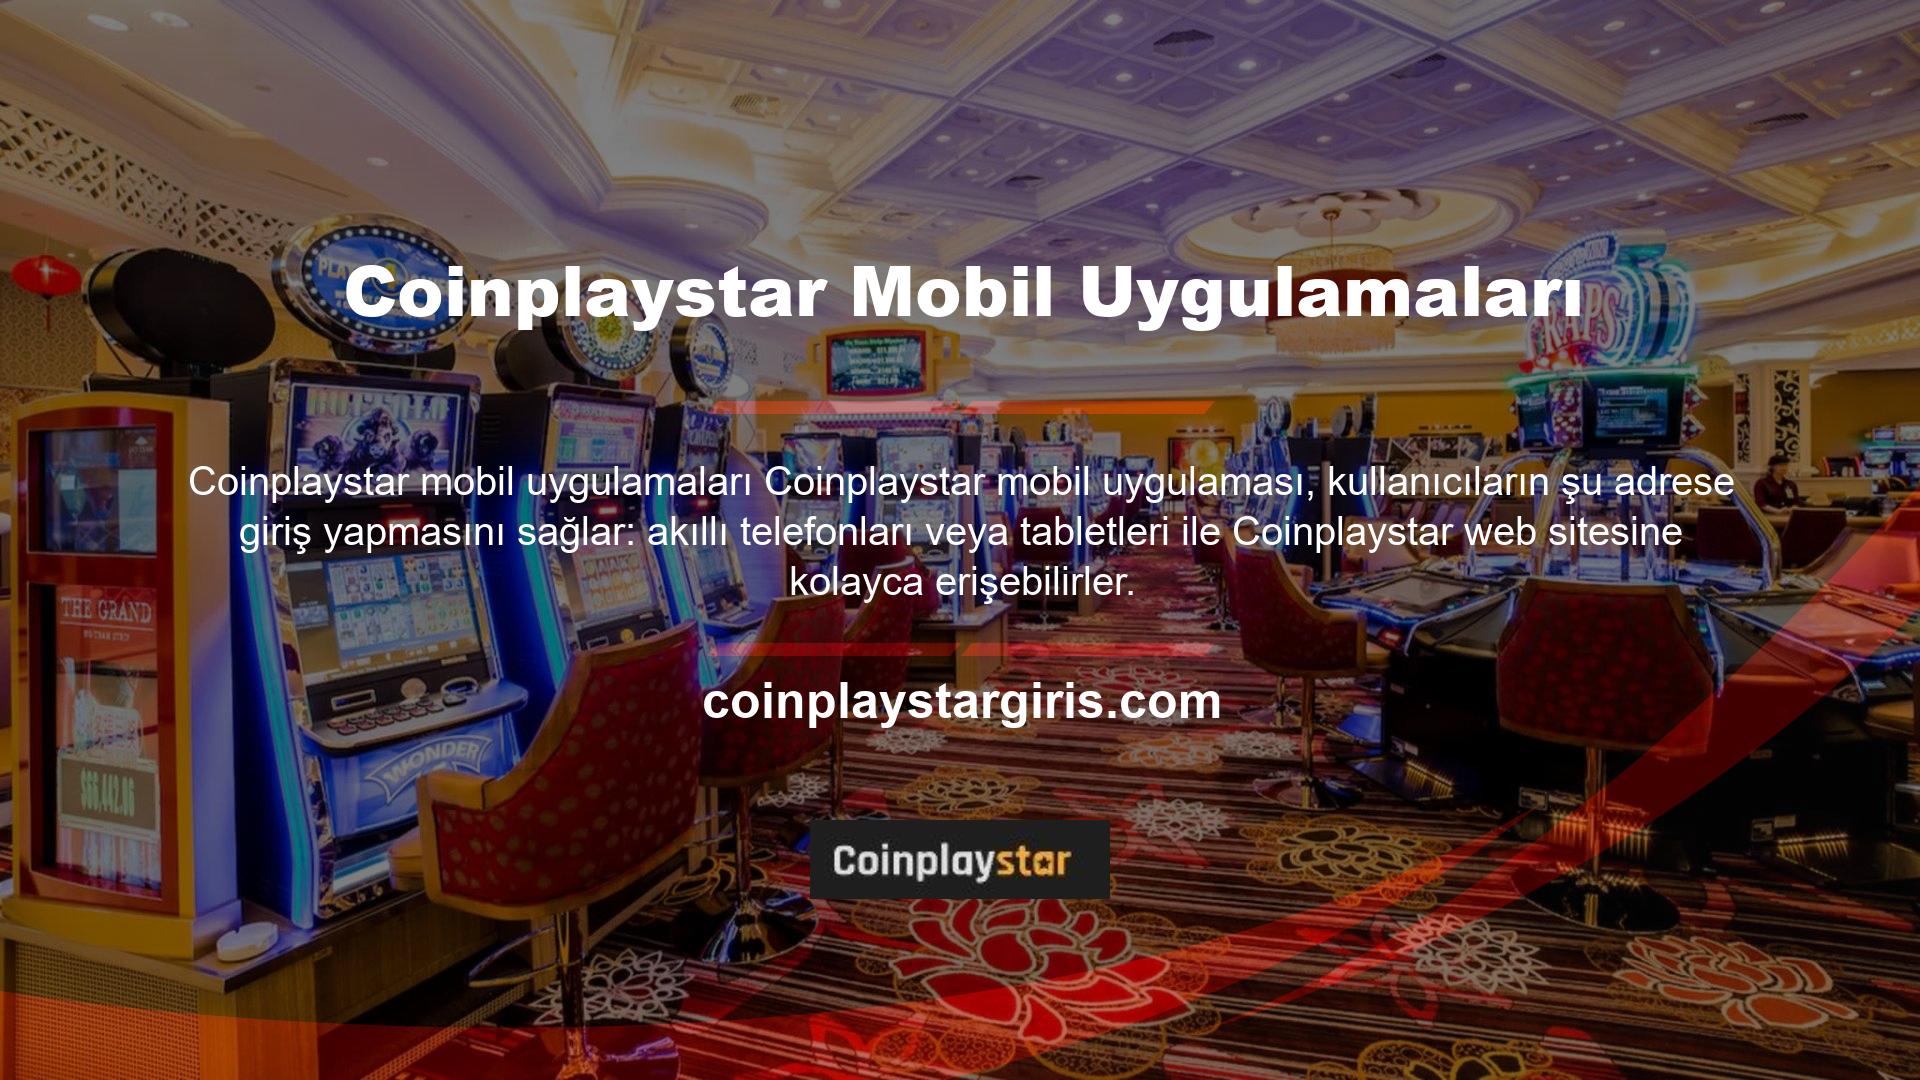 Coinplaystar mobil uygulama ve programları üyelik sahiplerine özel hazırlanmış olup, alan adı değişse bile sorunsuz bir şekilde giriş yapabilirler